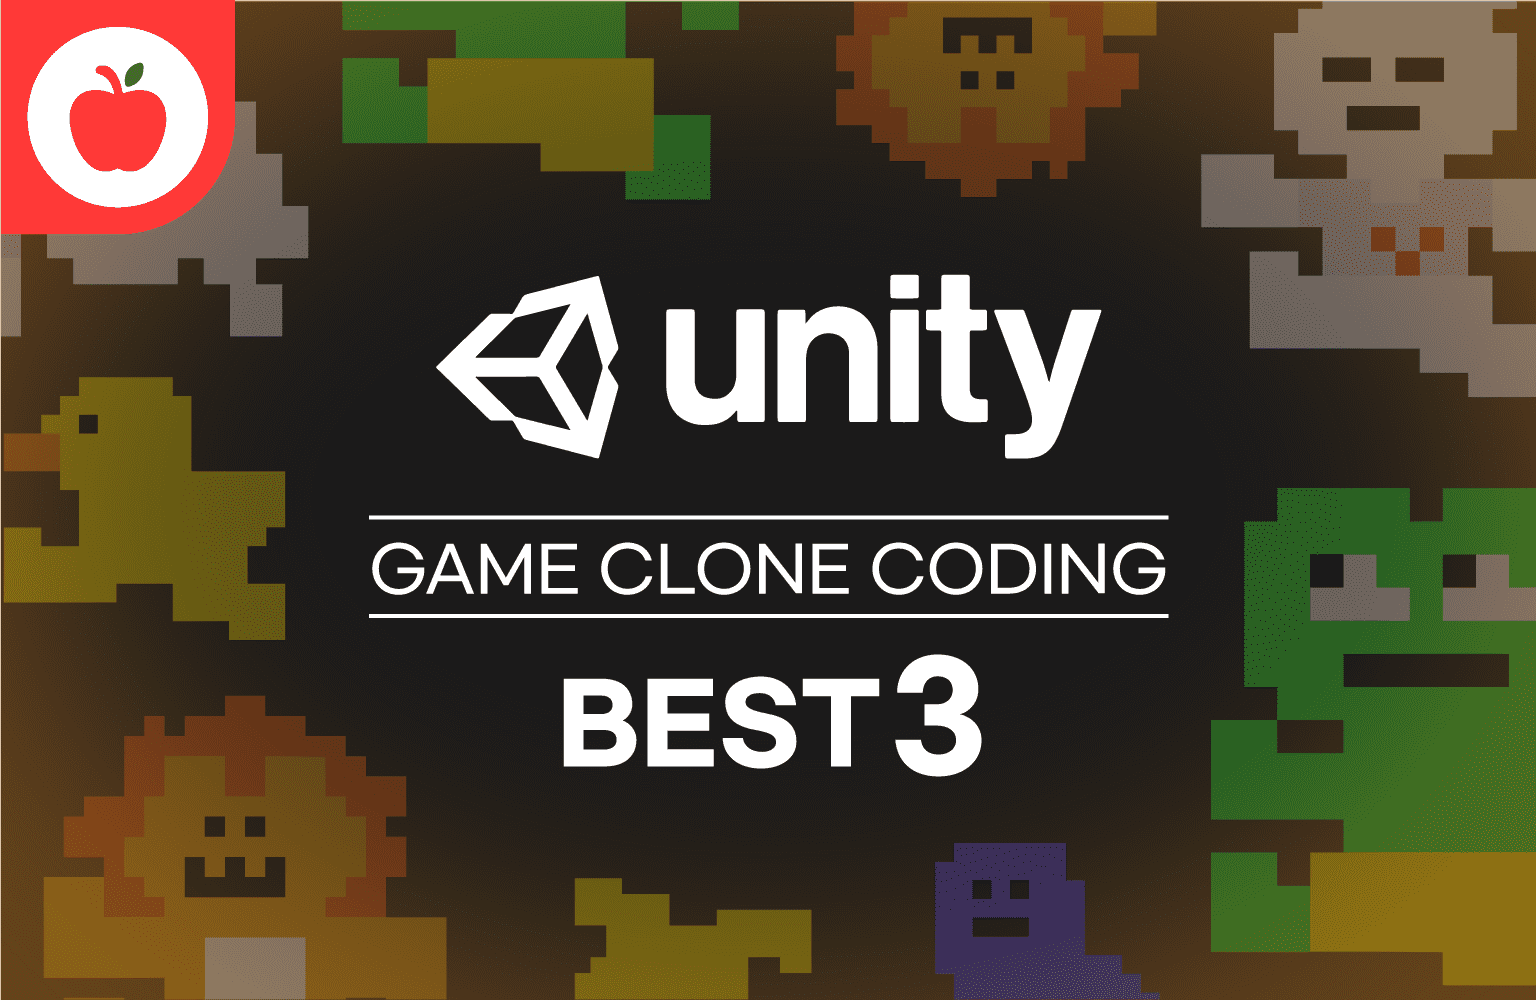 누구나 할 수 있다! 따라하며 배워보는 Unity3D 게임 클론 BEST 3 강의 이미지